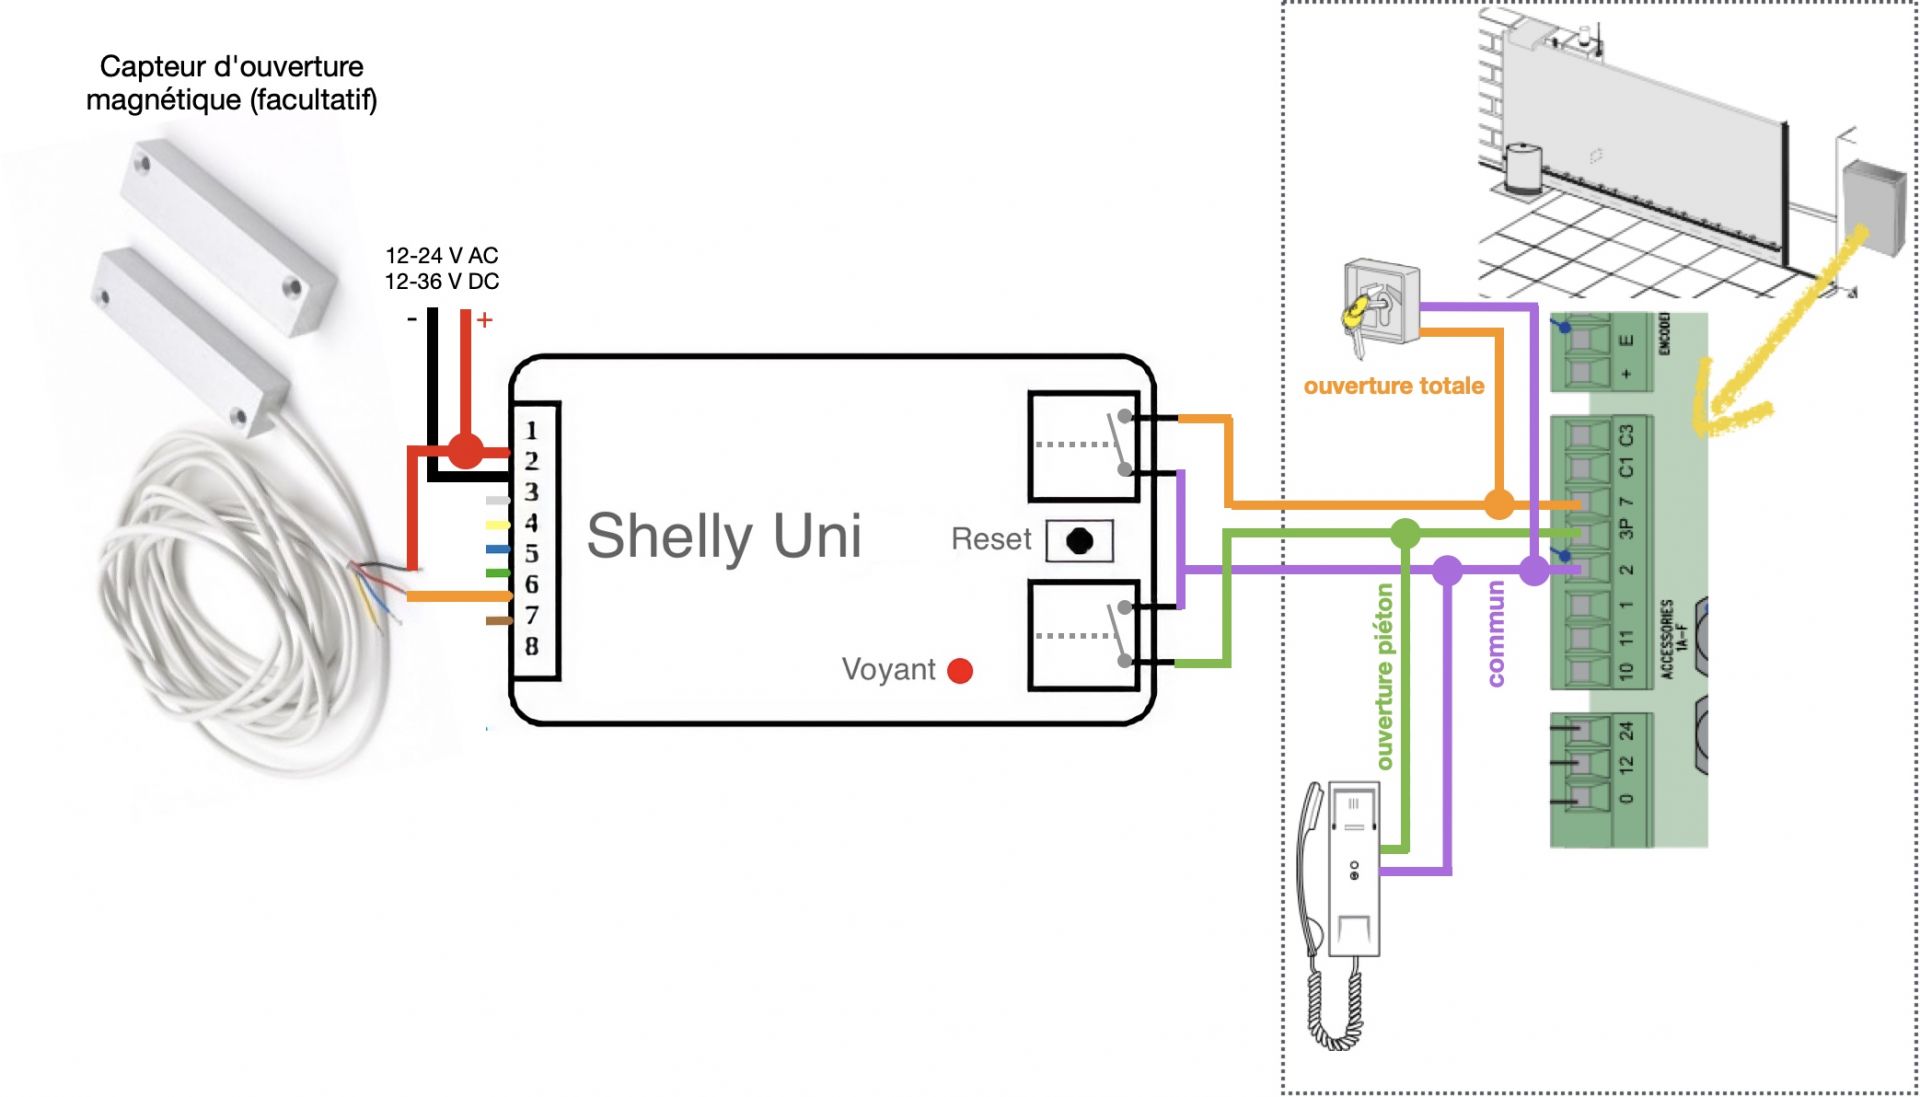 Câblage des sorties libres de potentielm (à "contact sec") du Smart Implant WiFi Shelly Uni - Exemple avec un portail ou une porte de garage